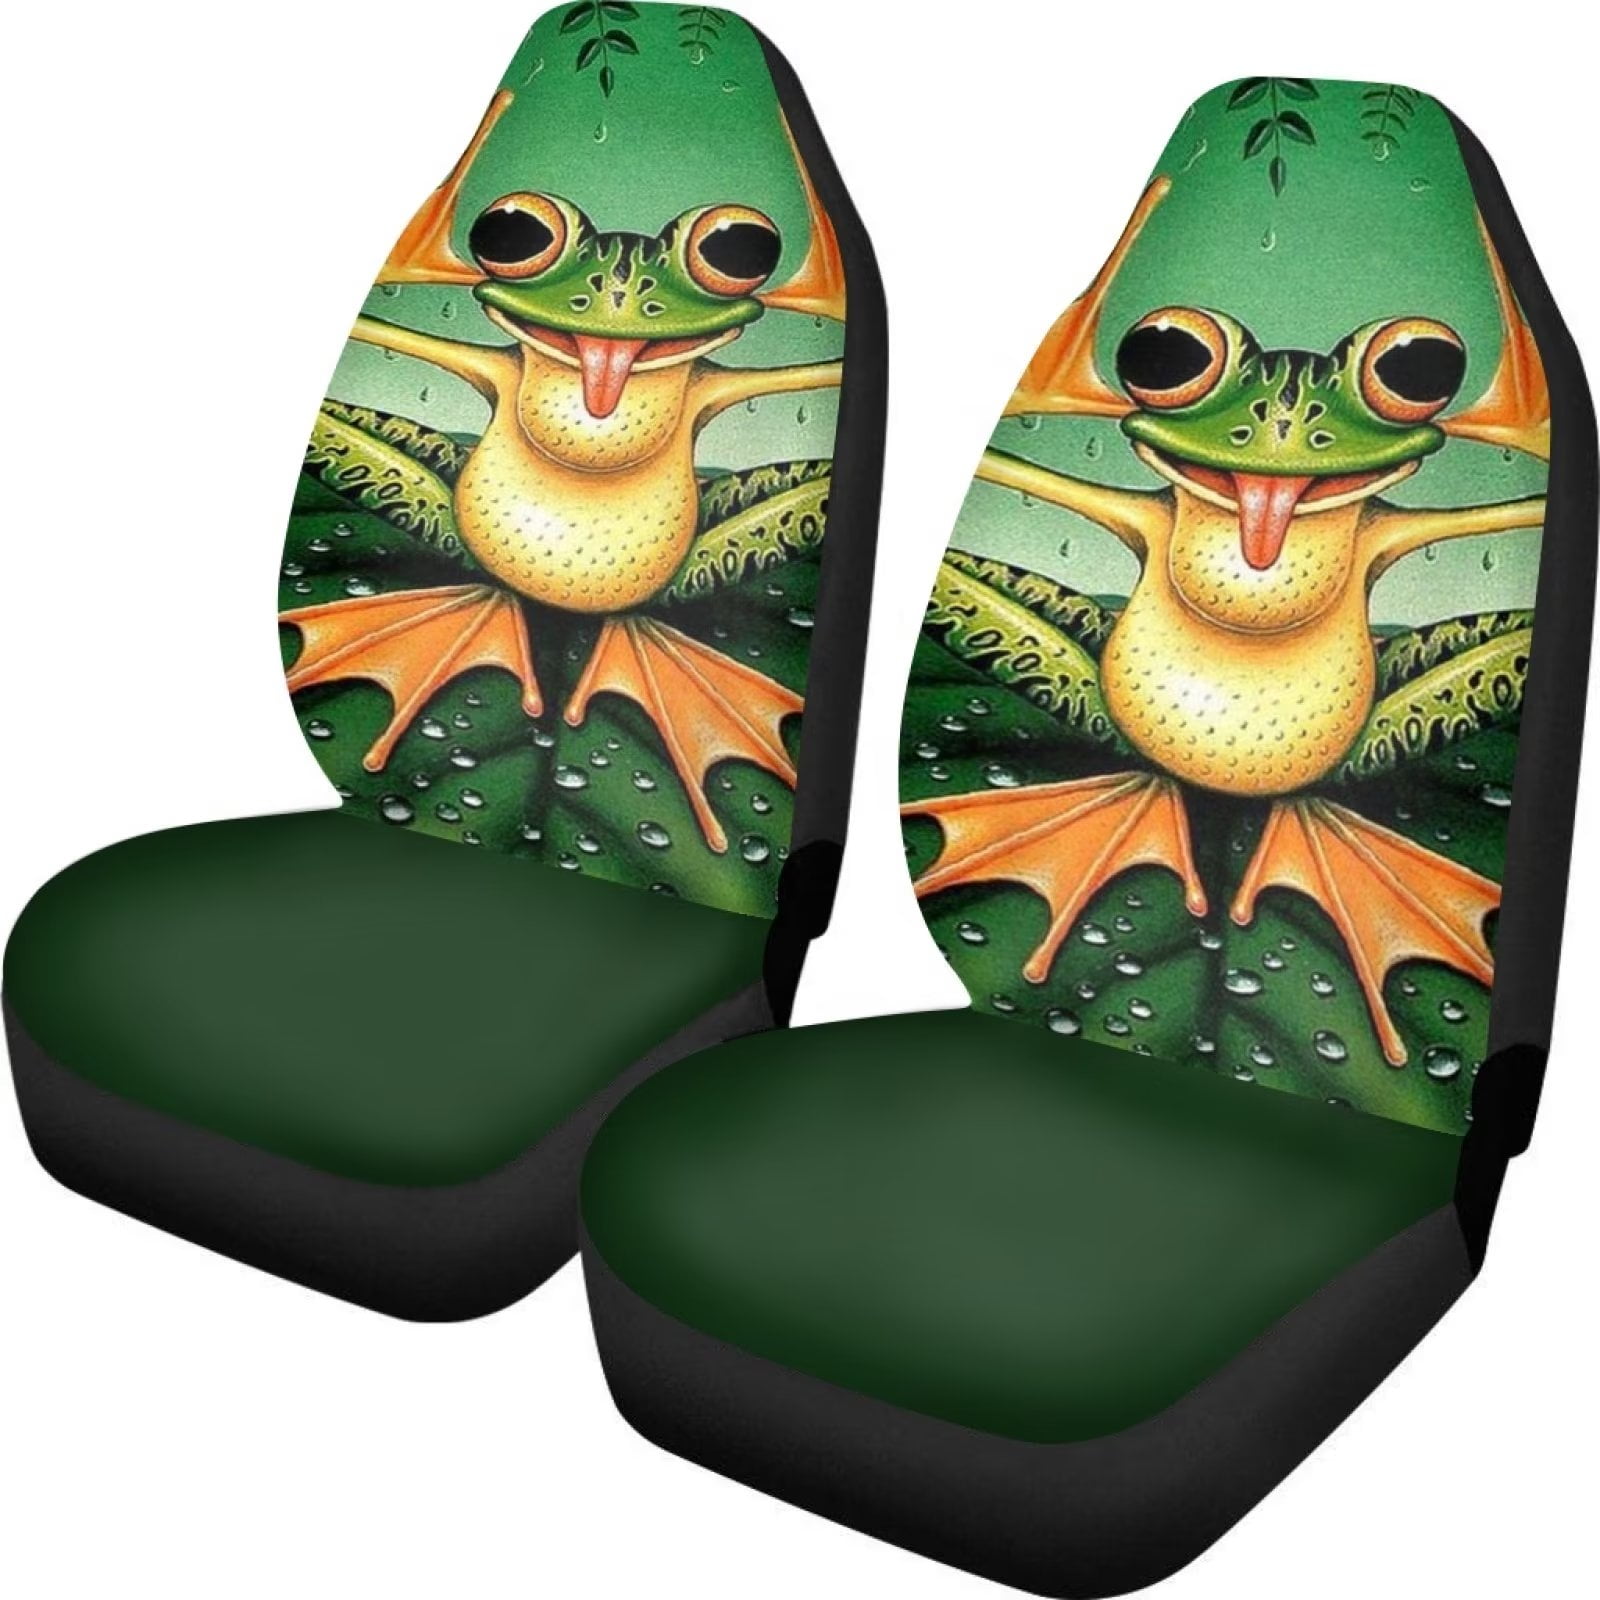 Frog car seat cover - .de